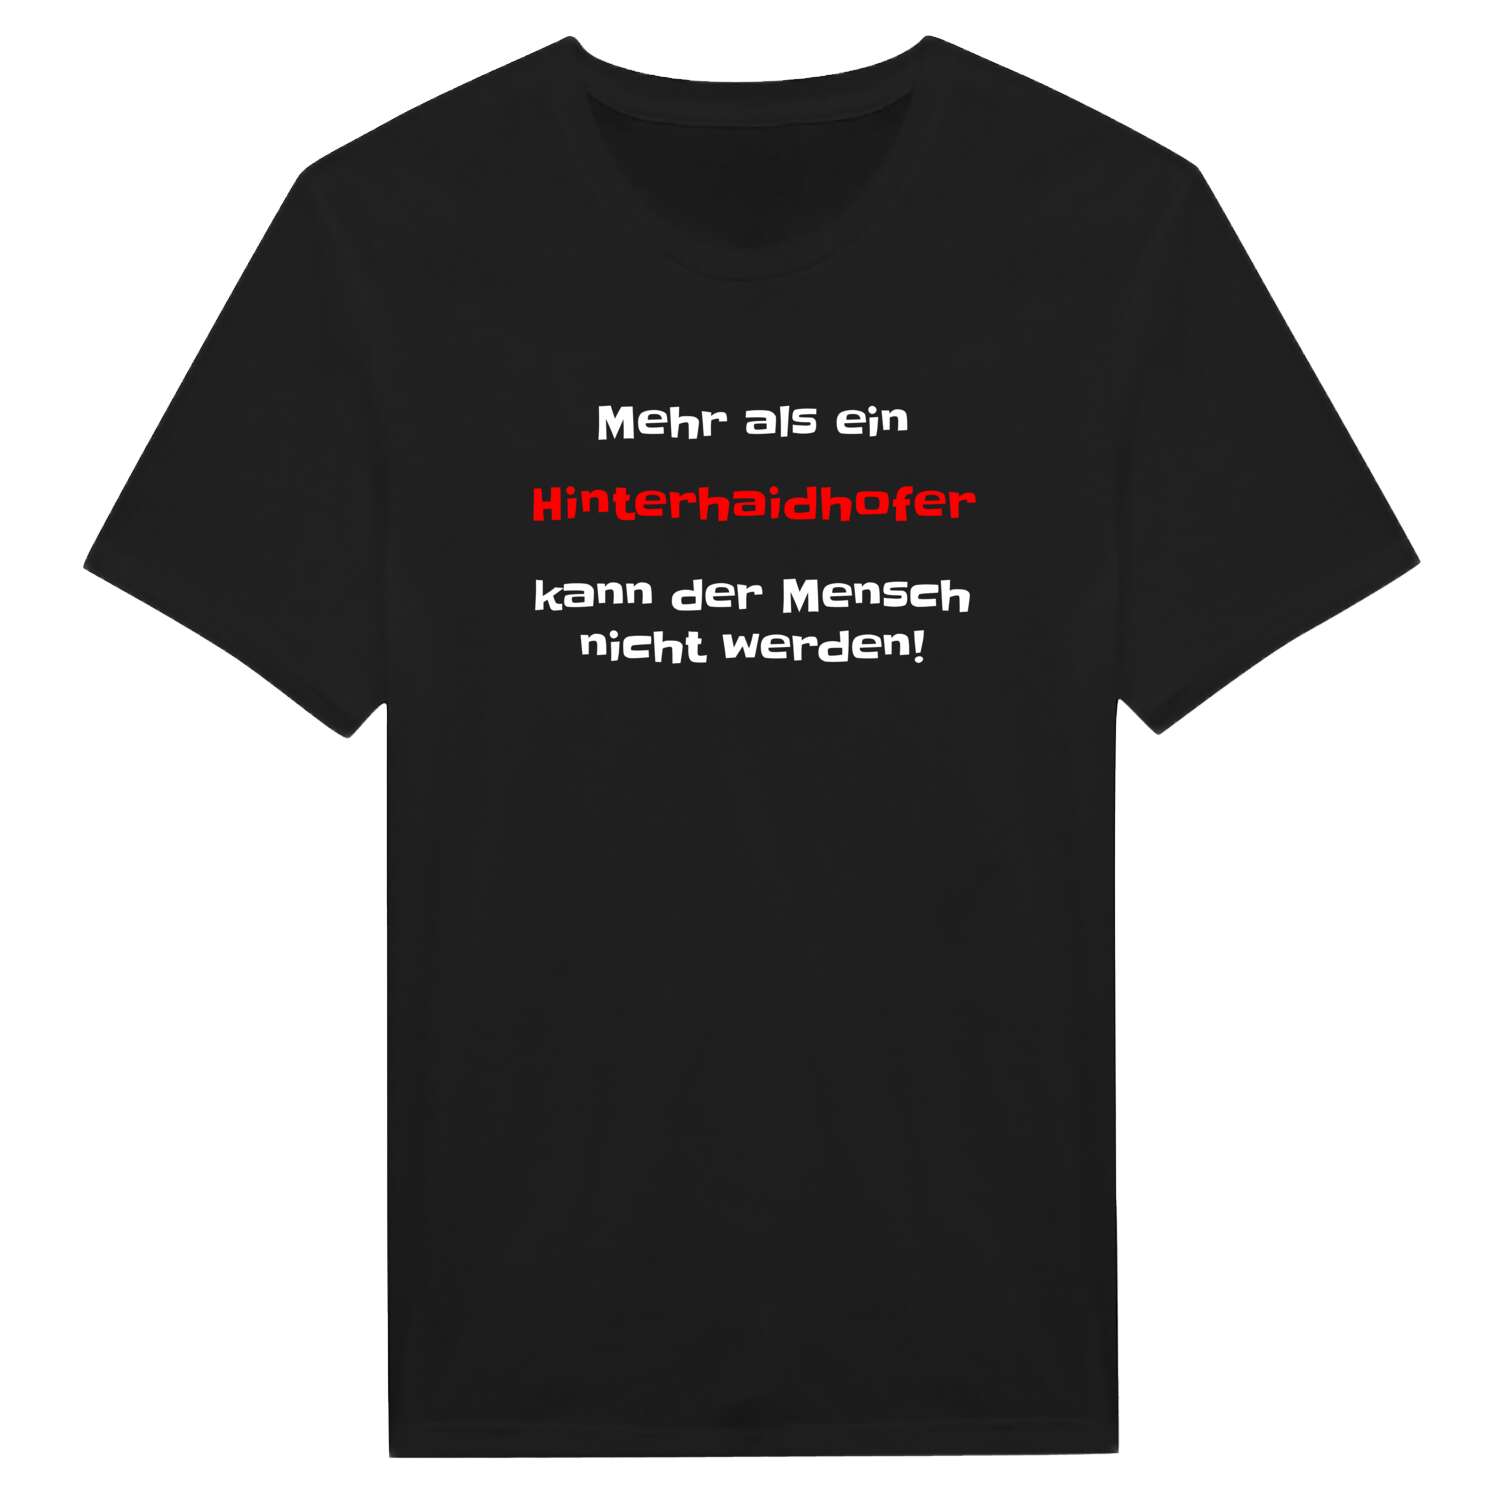 Hinterhaidhof T-Shirt »Mehr als ein«